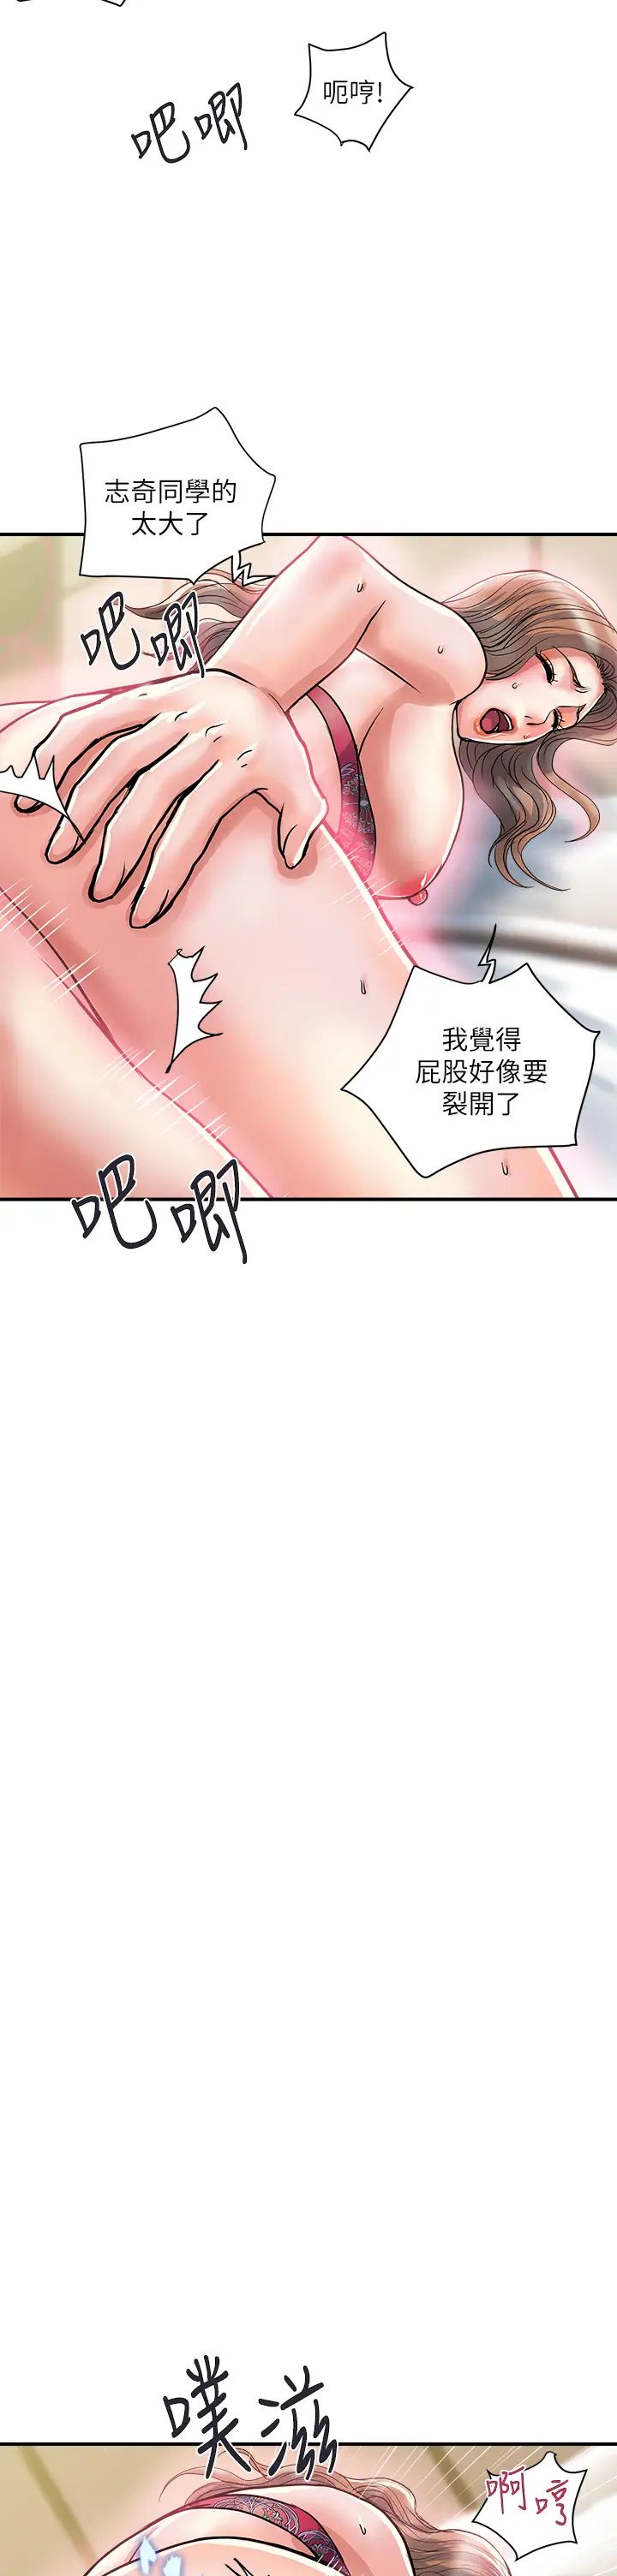 韩国污漫画 行走費洛蒙 第37话后庭的美妙滋味 2